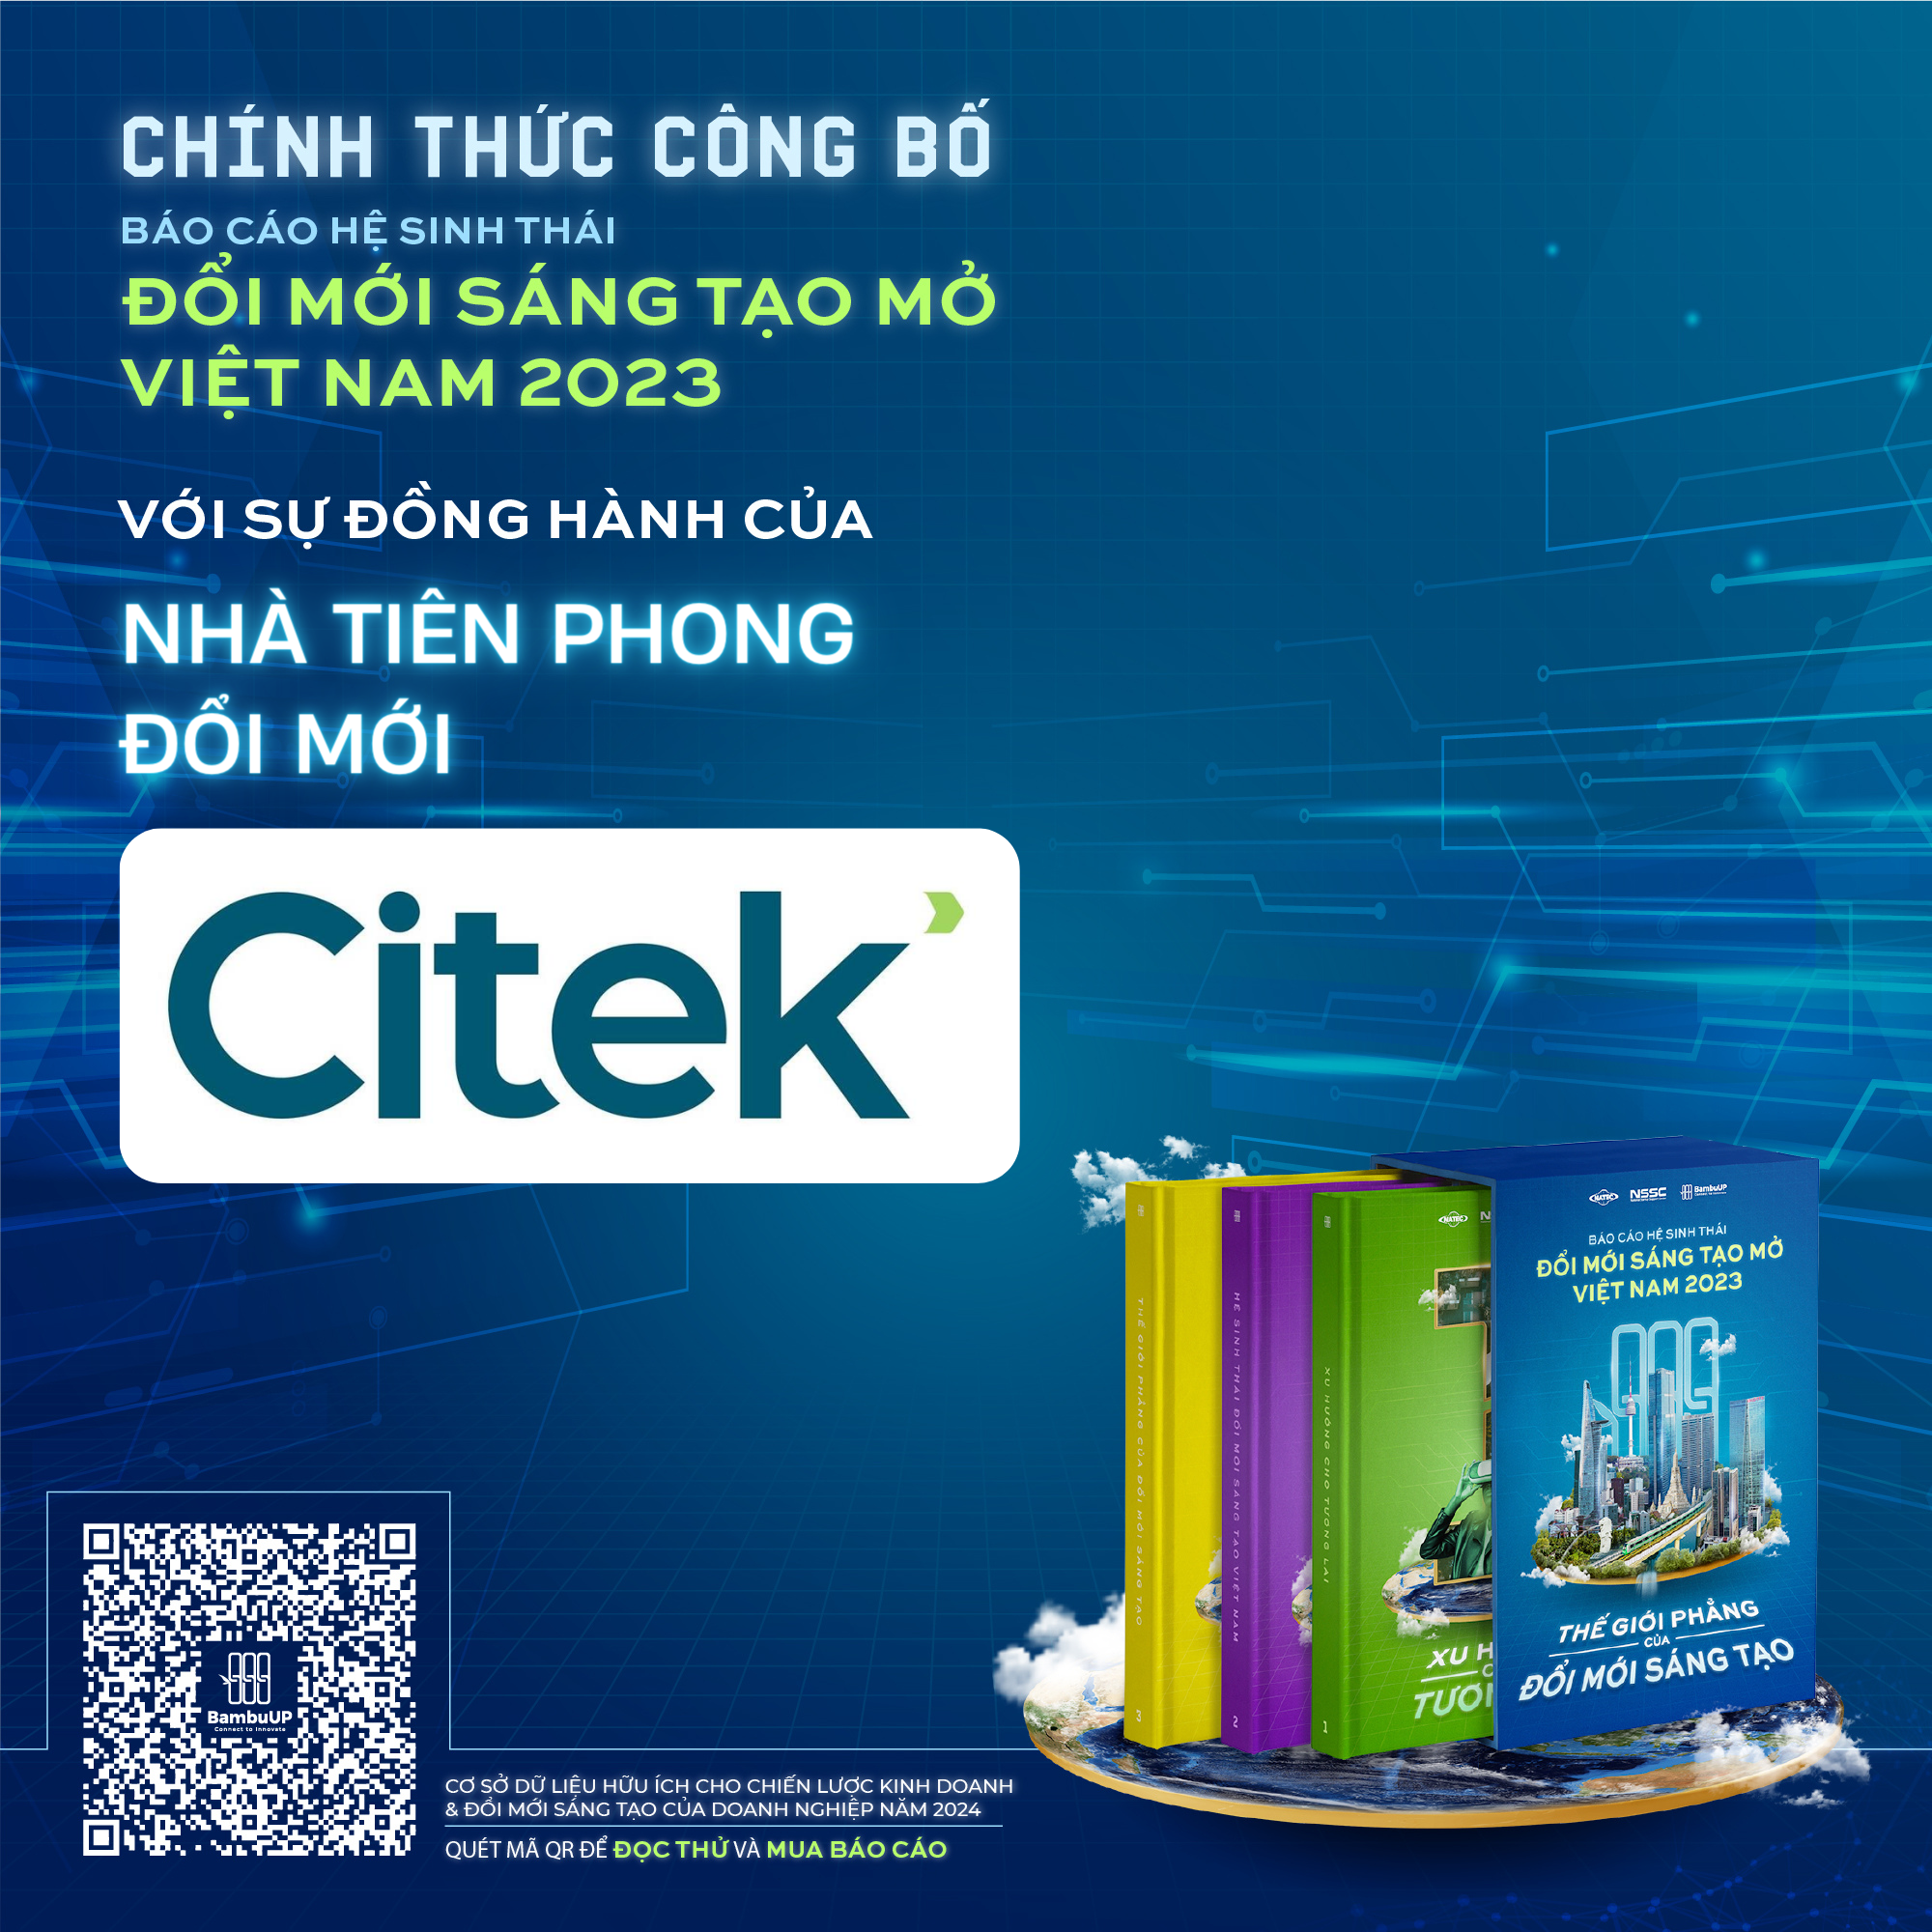 CITEK Technology đi cùng Báo cáo Hệ sinh thái Đổi mới sáng tạo Mở Việt Nam với vai trò: “Nhà tiên phong đổi mới”